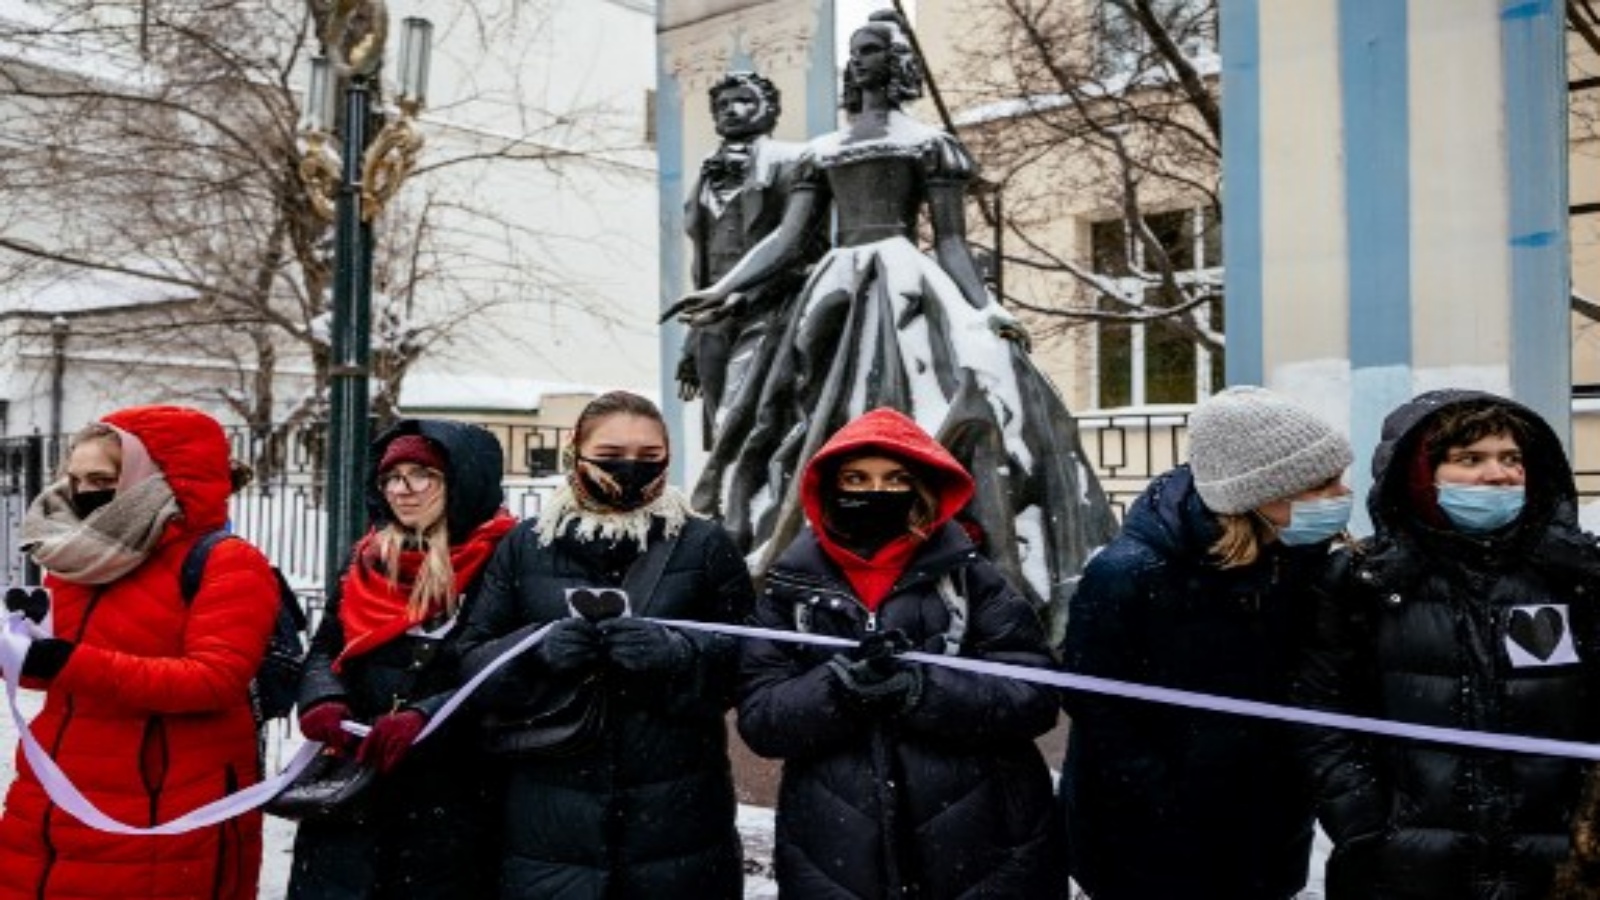 نساء روسيات يحملن شريطًا أبيض طويلًا أثناء تشكيلهن لسلسلة بشرية باستخدام عيد الحب للتعبير عن دعمهن لزوجة زعيم المعارضة المسجون وغيره من السجناء السياسيين ، في شارع أربات في وسط مدينة موسكو التاريخي في 14 فبراير 2021